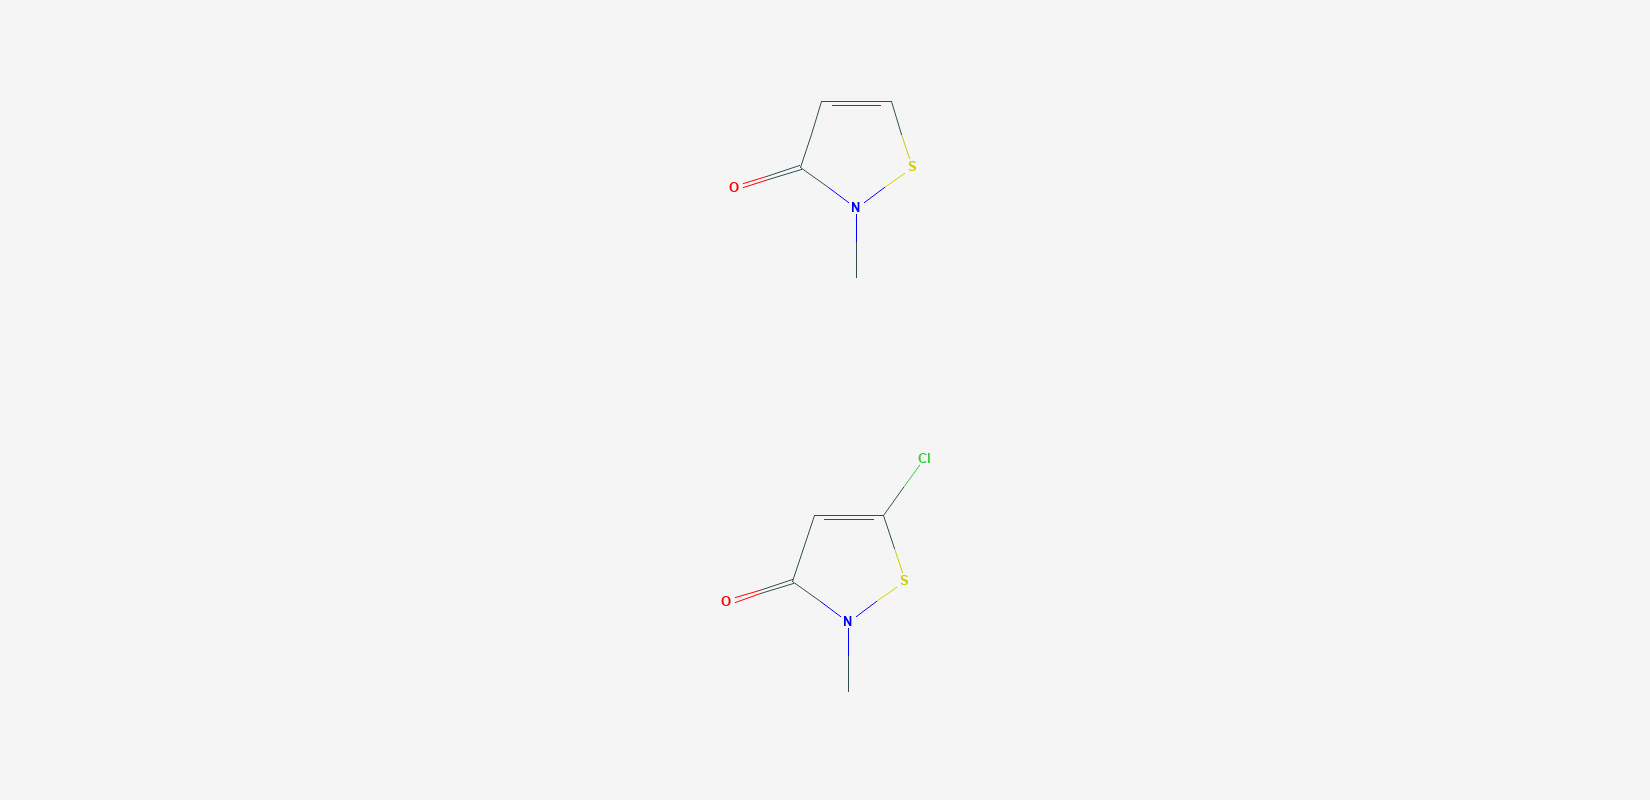 Structure of Methylisothiazolinone (MI) and Methylchloroisothiazolinone (MCI)